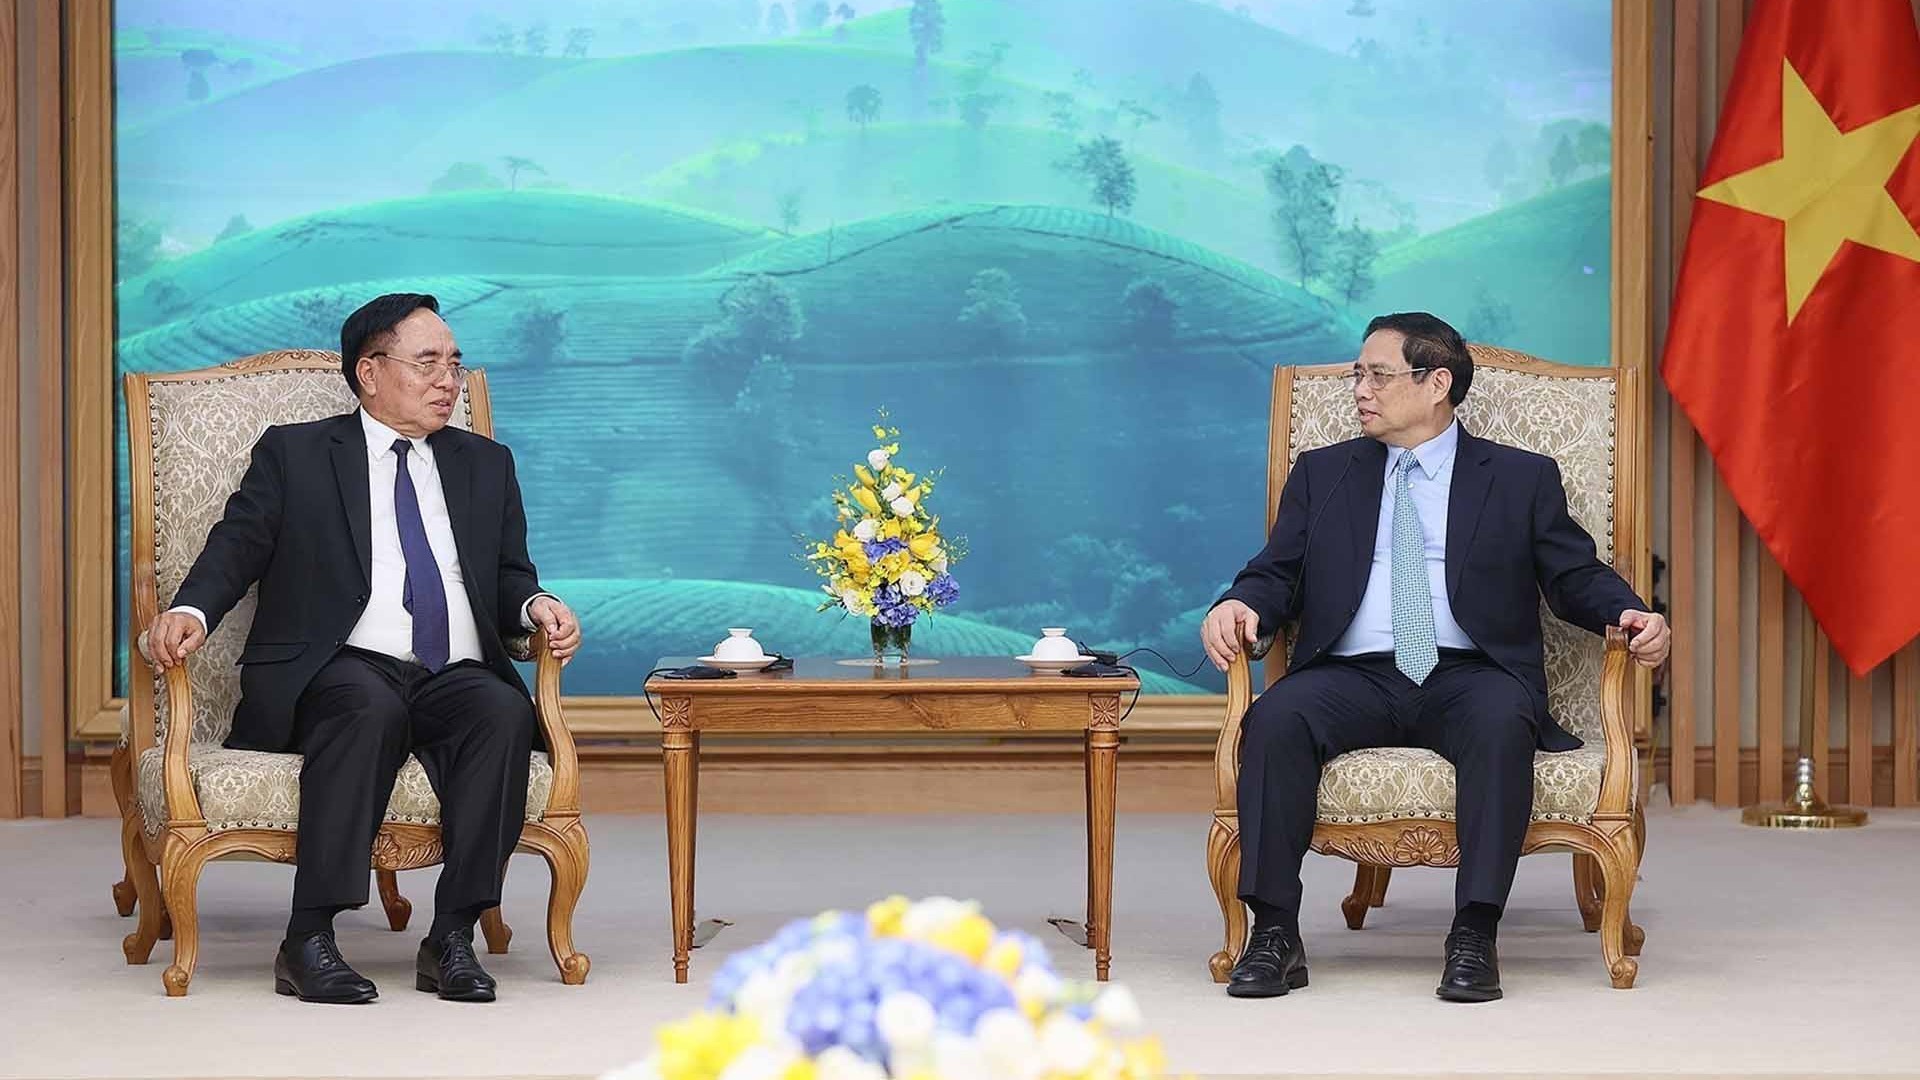 Thủ tướng Phạm Minh Chính: Việt Nam luôn kề vai sát cánh, hết sức hỗ trợ Lào theo khả năng